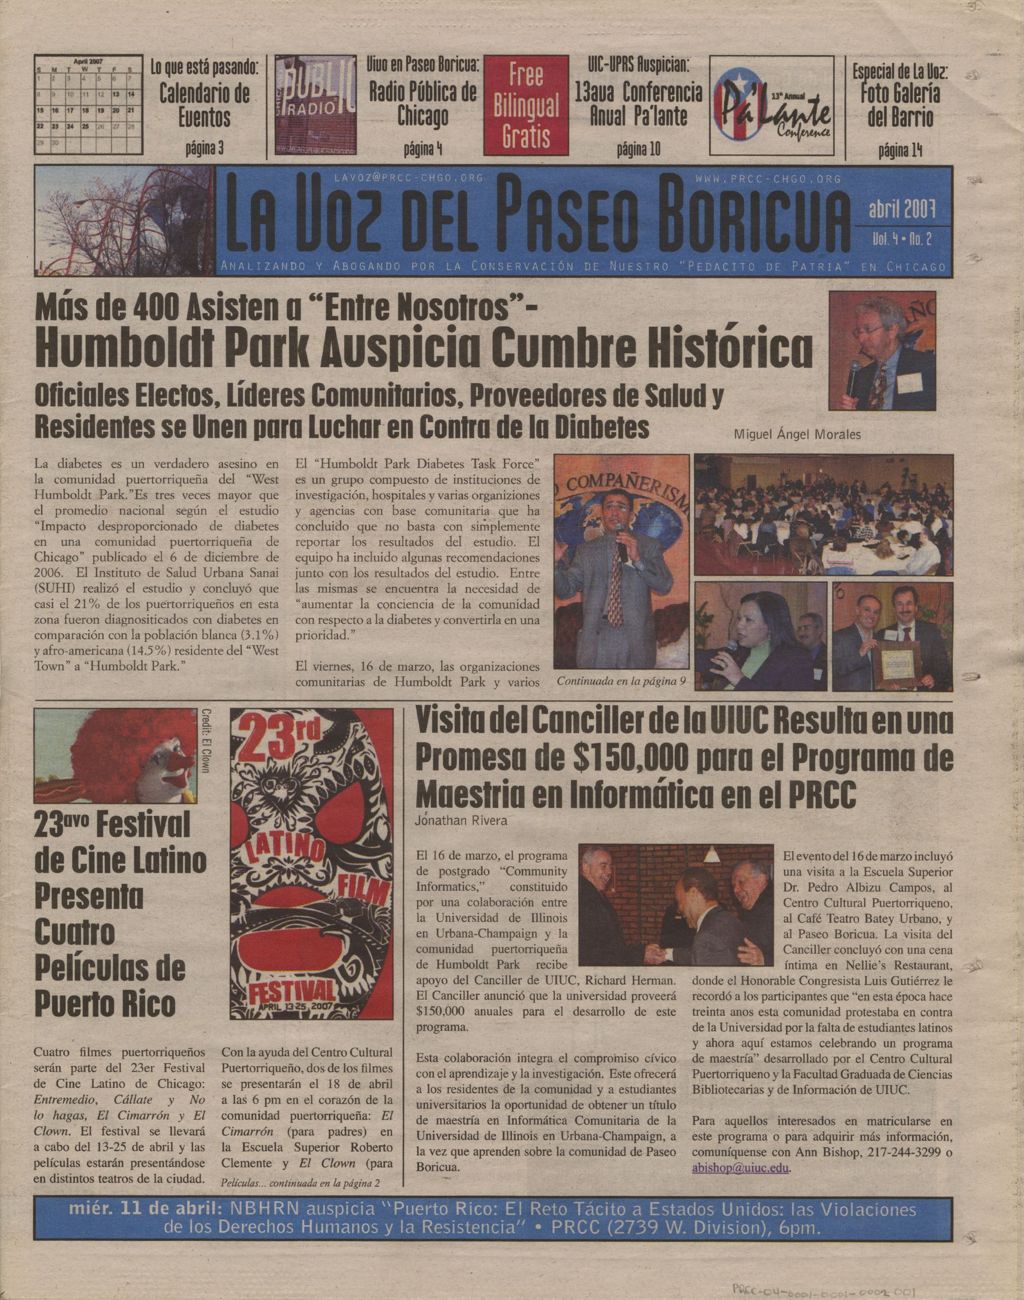 Miniature of La Voz del Paseo Boricua; April 2007; vol. 4, no. 2 (Spanish and English covers)